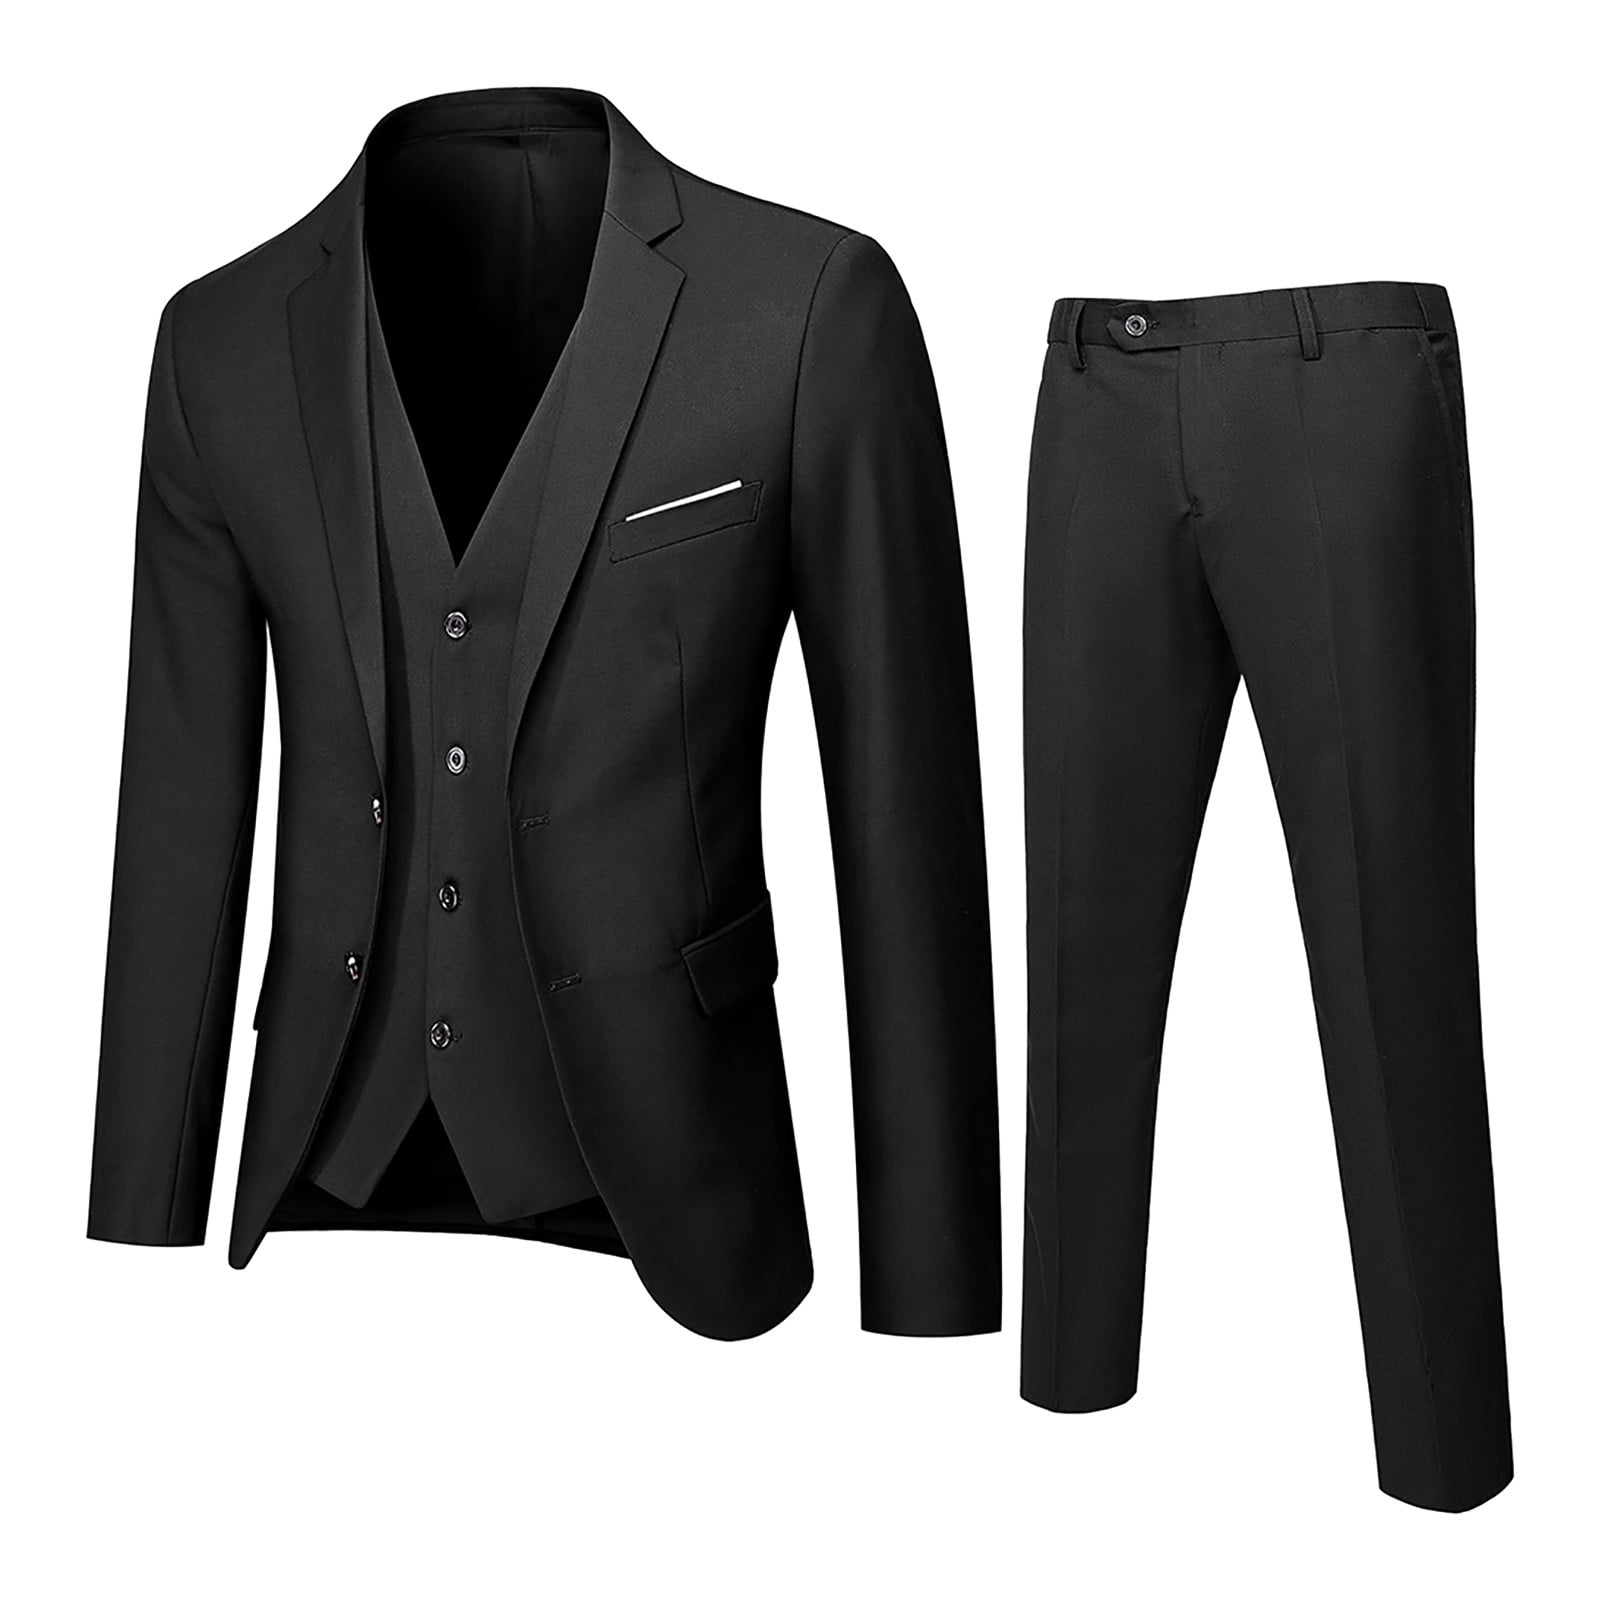 Wozhidaose Men’s Suit Slim 3 Piece Suit Business Wedding Party Jacket ...